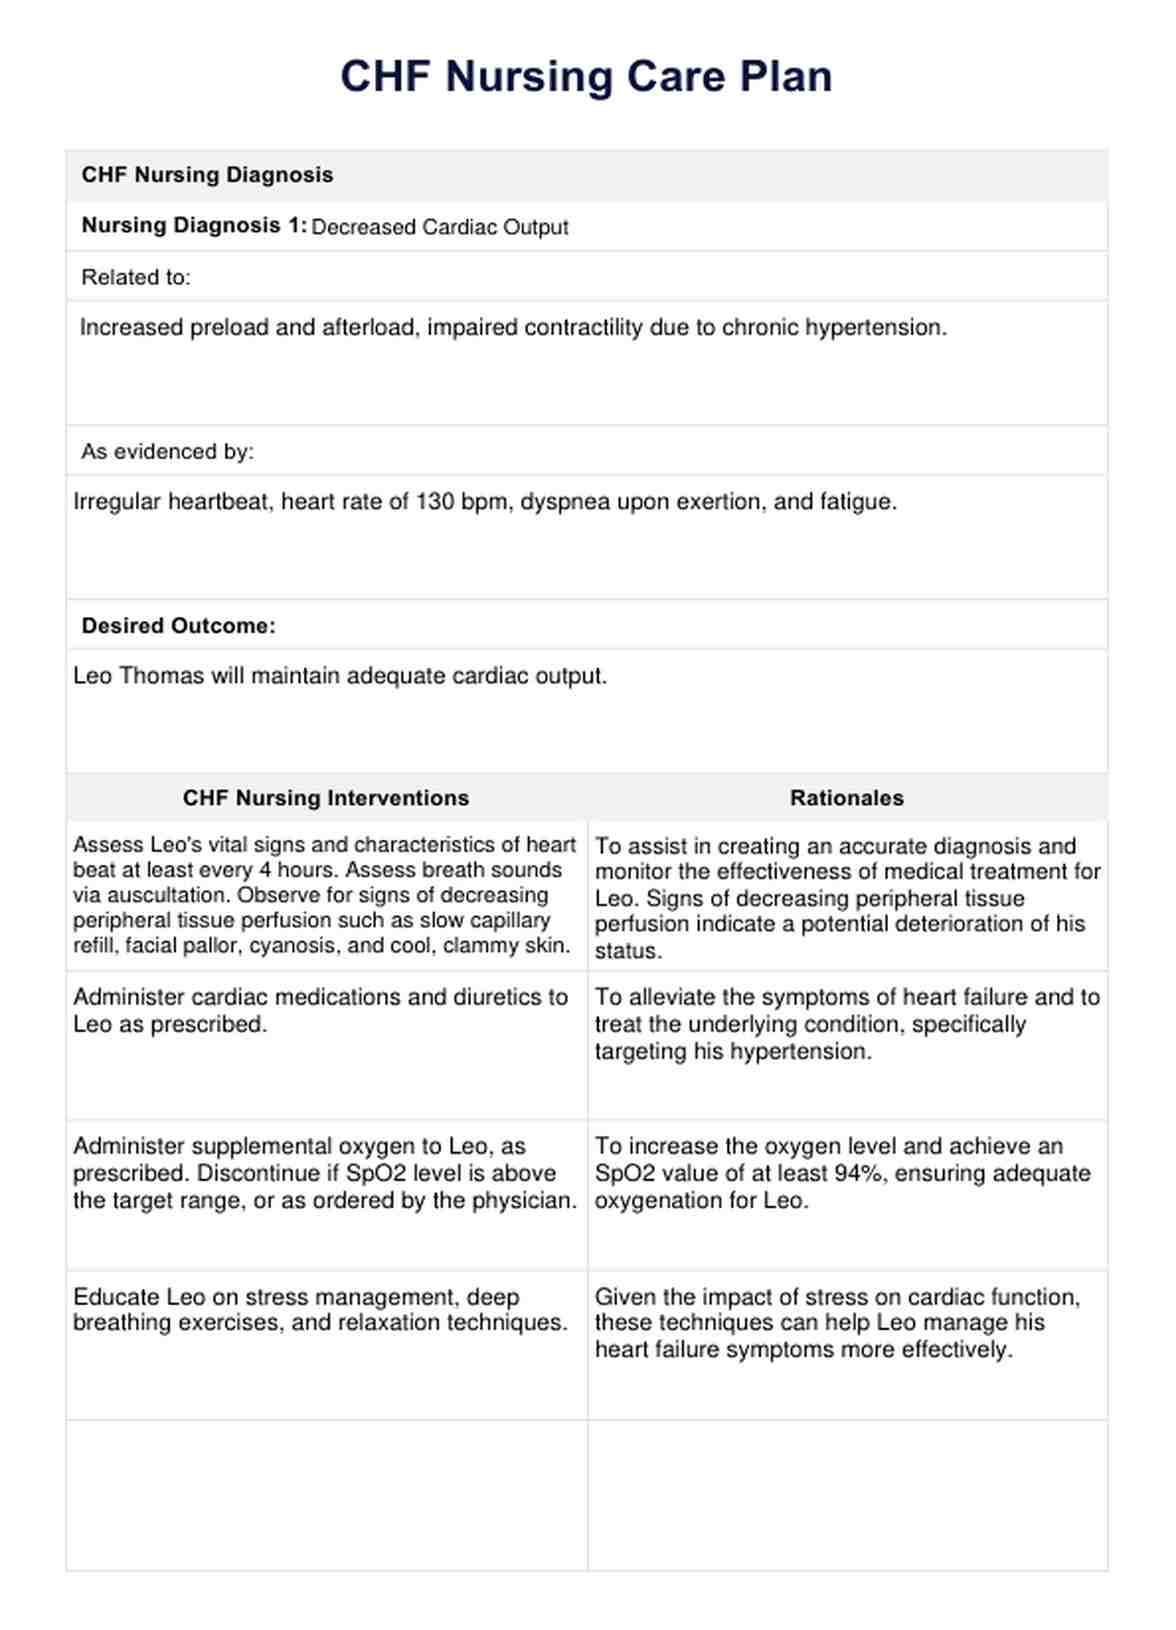 CHF Nursing Care Plan PDF Example